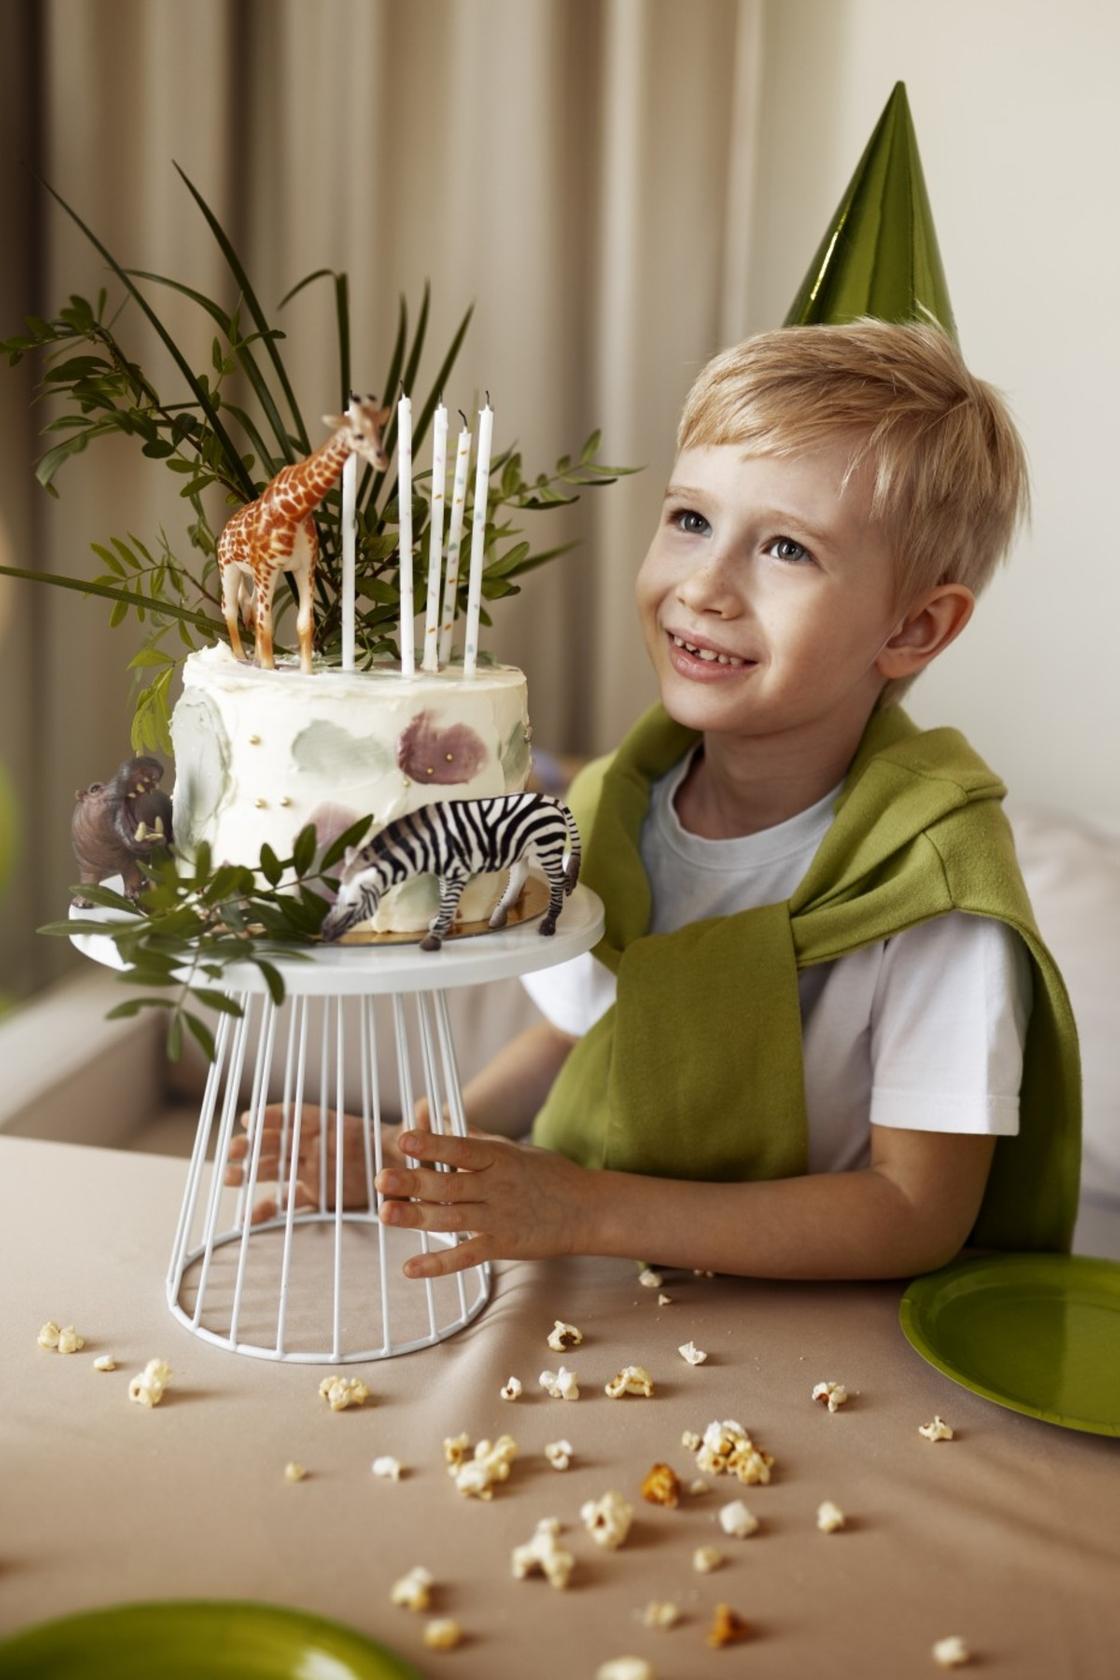 Мальчик в зеленом колпачке стоит возле торта на подставке и улыбается. На торте стоит 5 свечек и фигурка жирафа